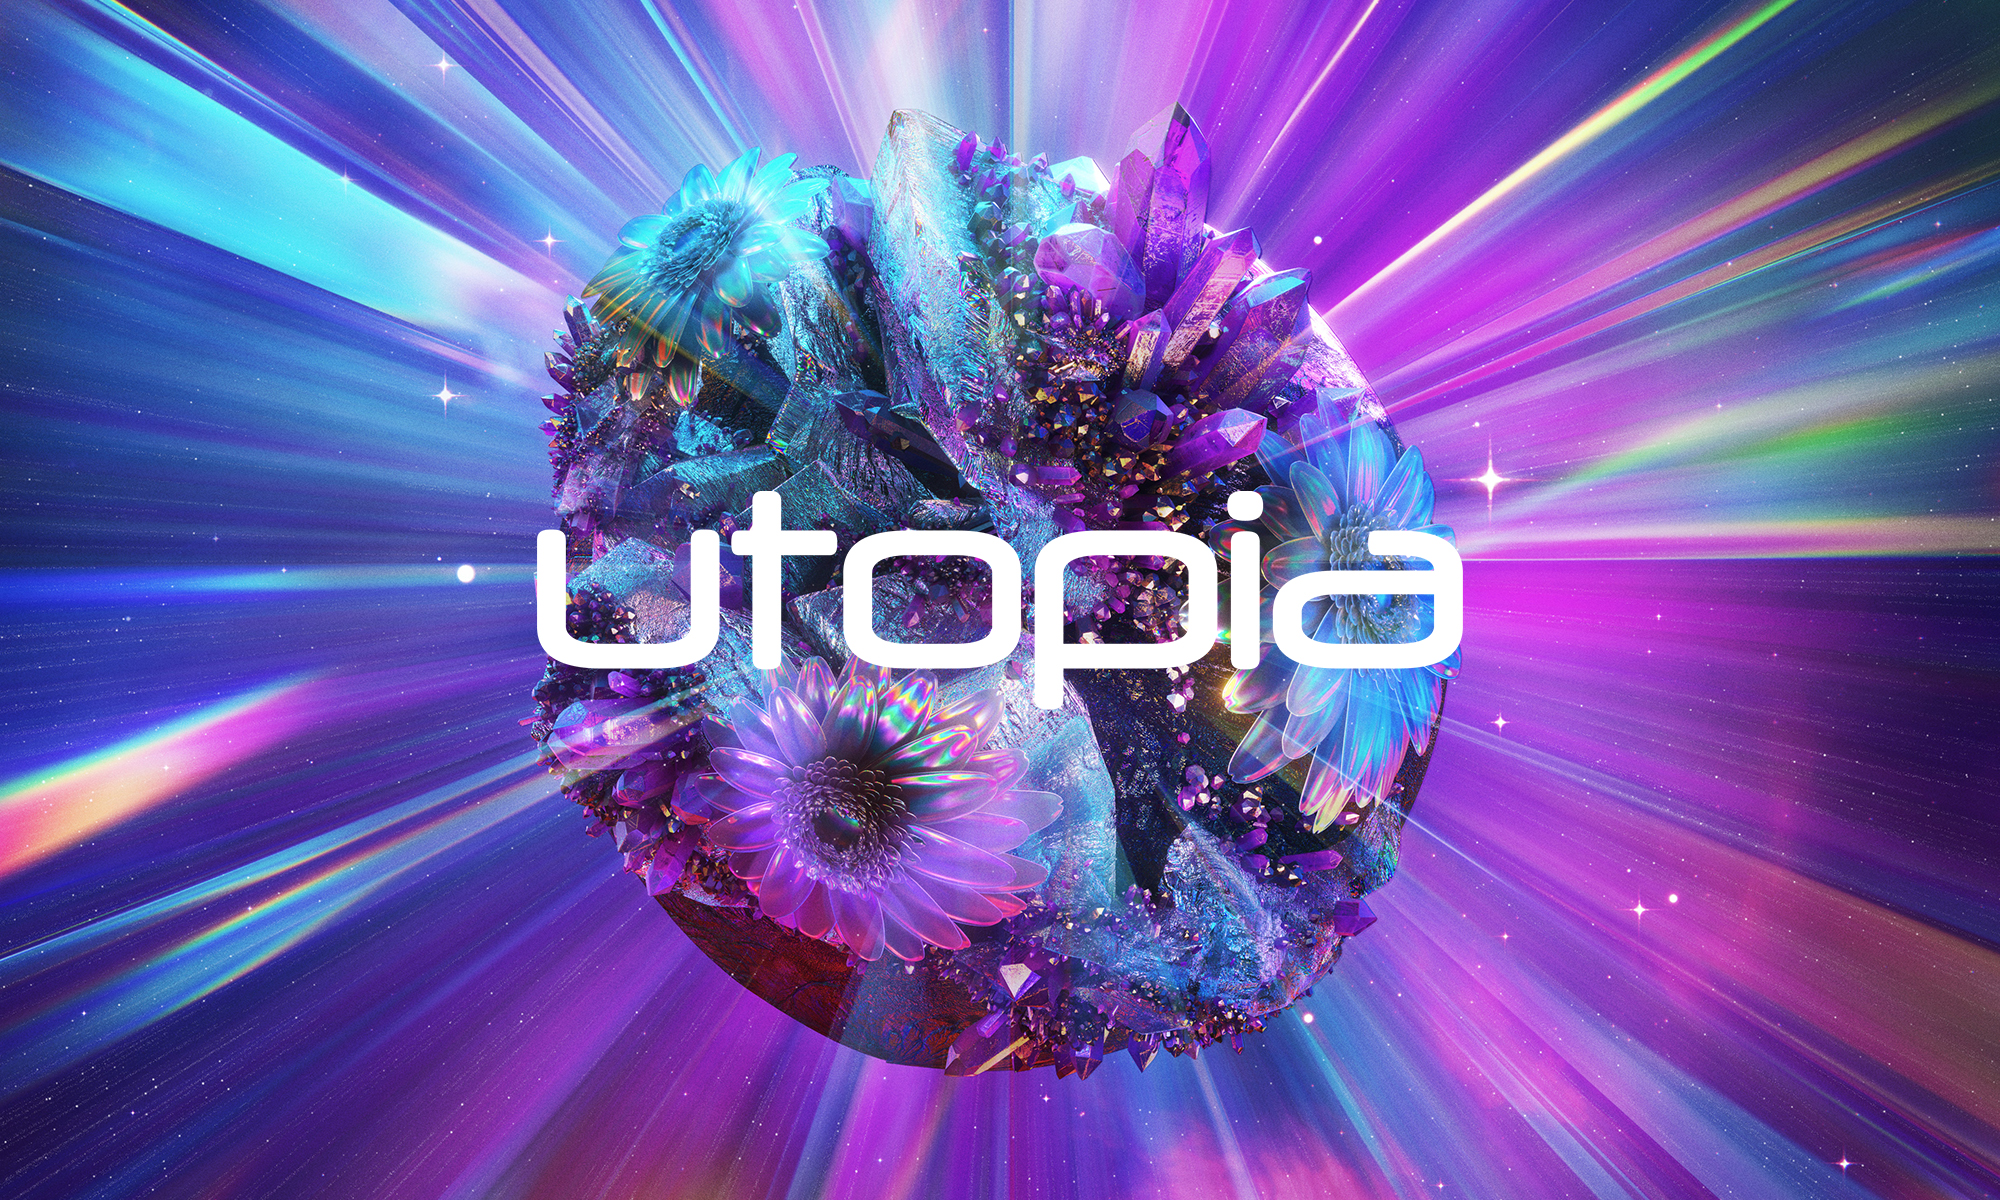 Utopia-manual-web-2000x1200.jpg